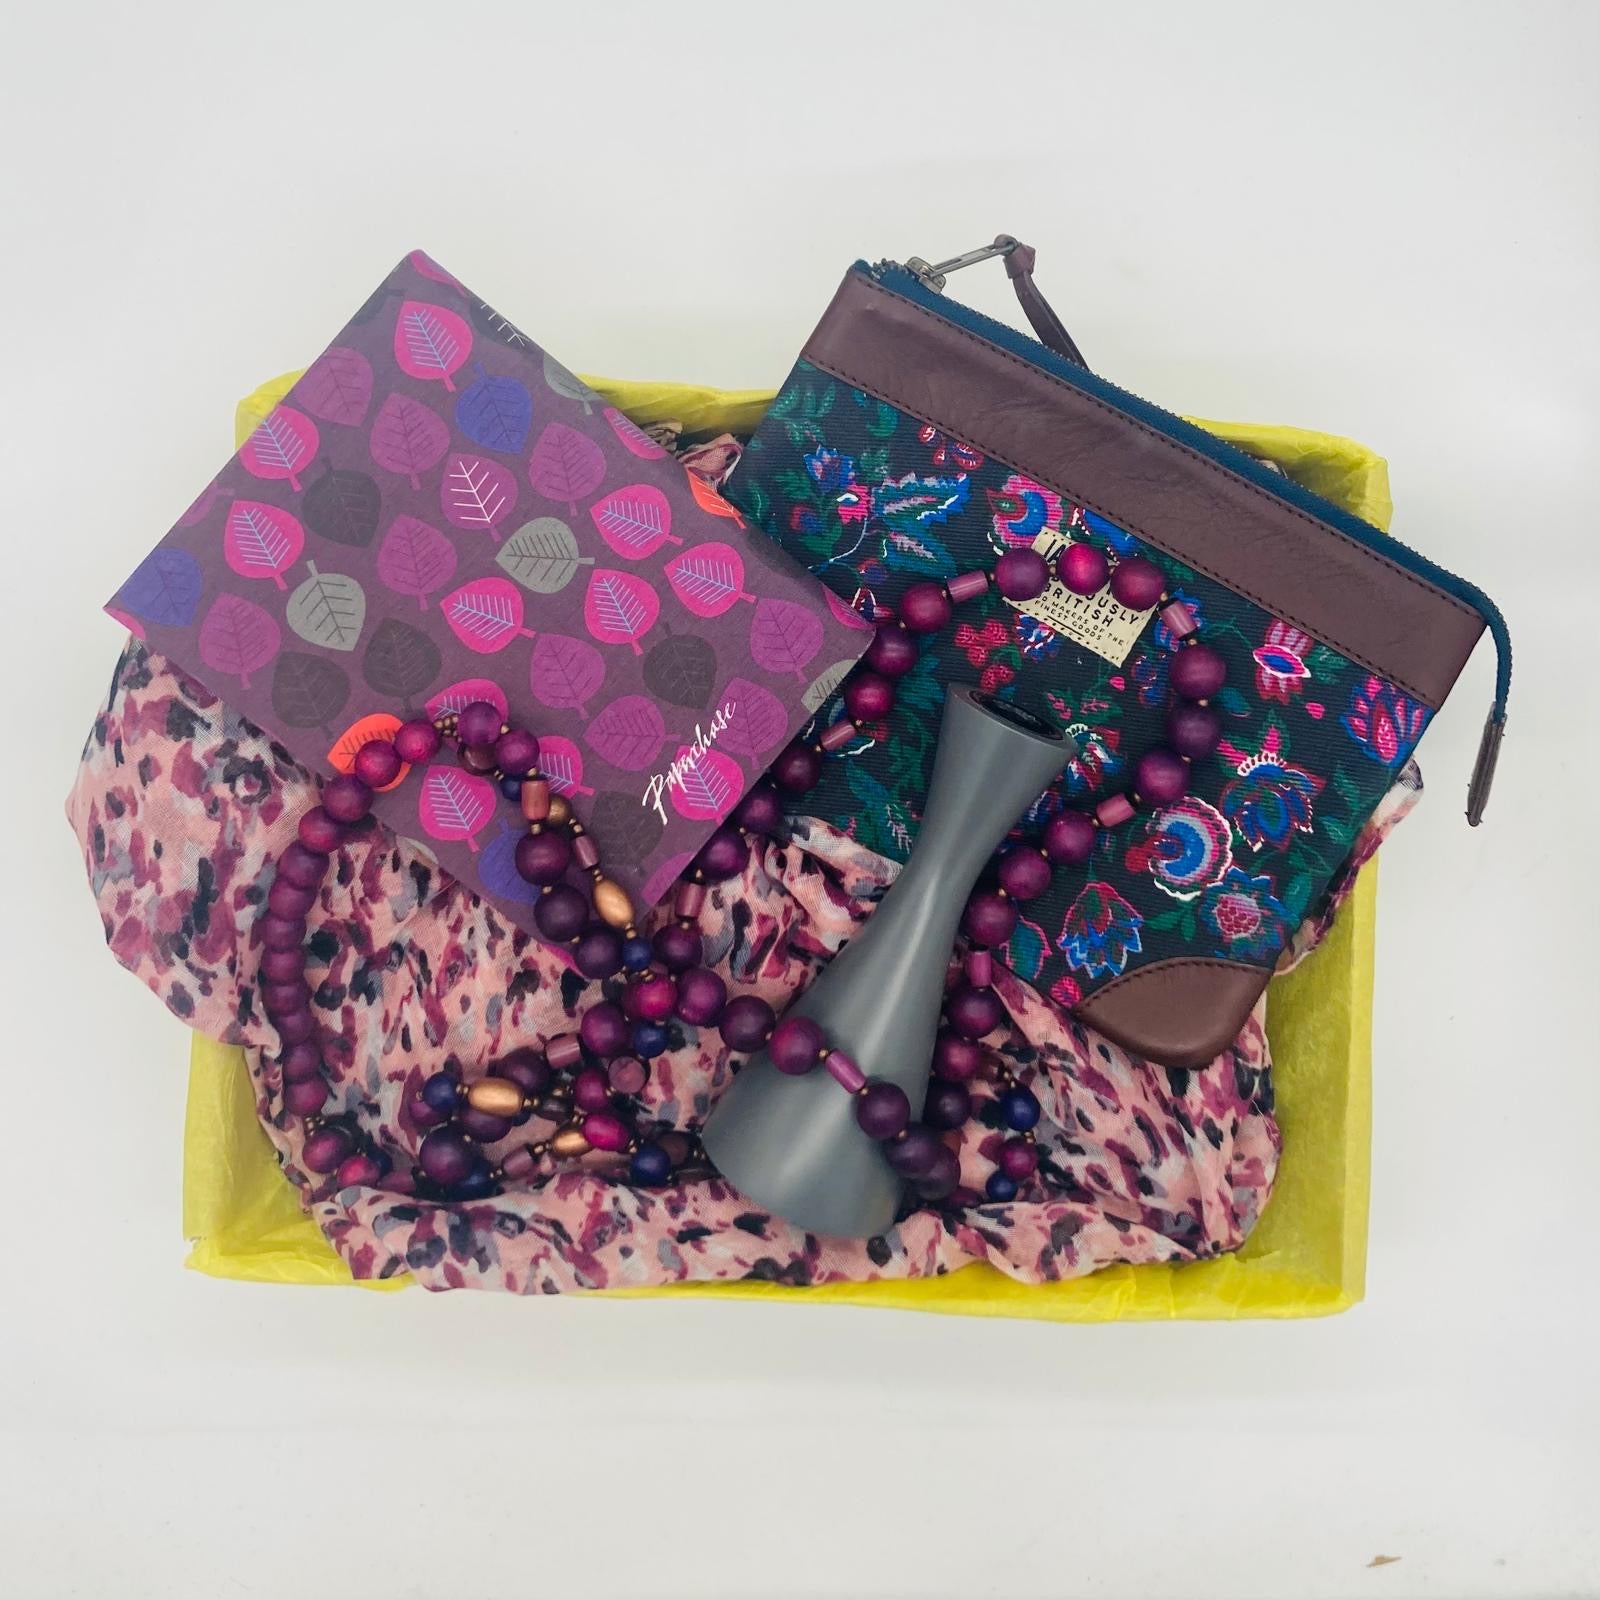 'Purple Daze' (as new accessory box!)